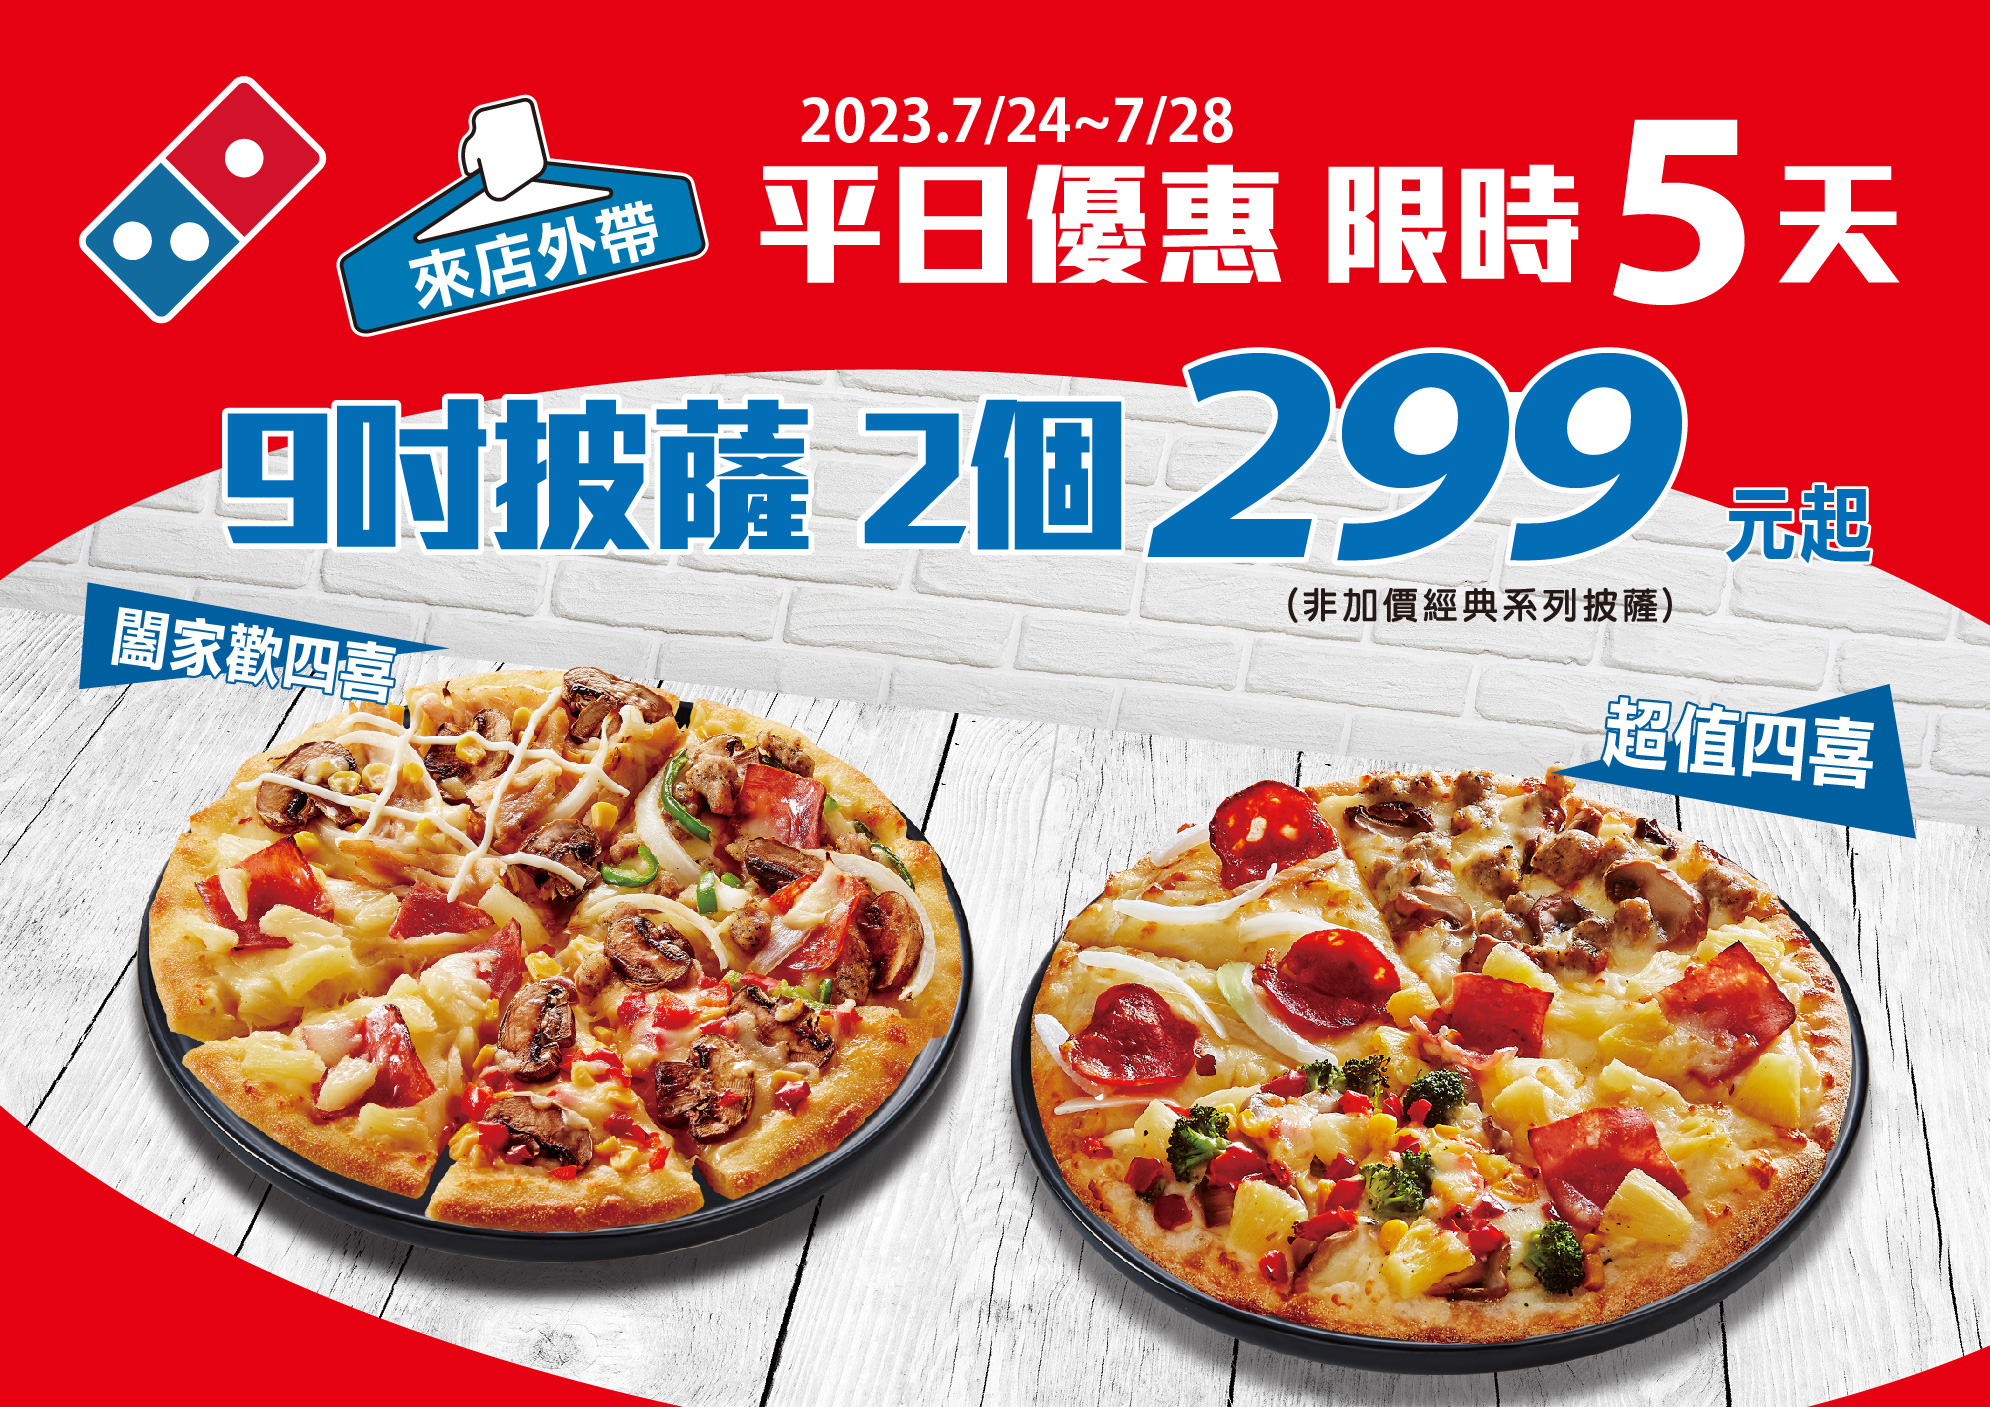 達美樂優惠「9 吋披薩 2 個 299 元起」7/24 至 7/28 限時販售